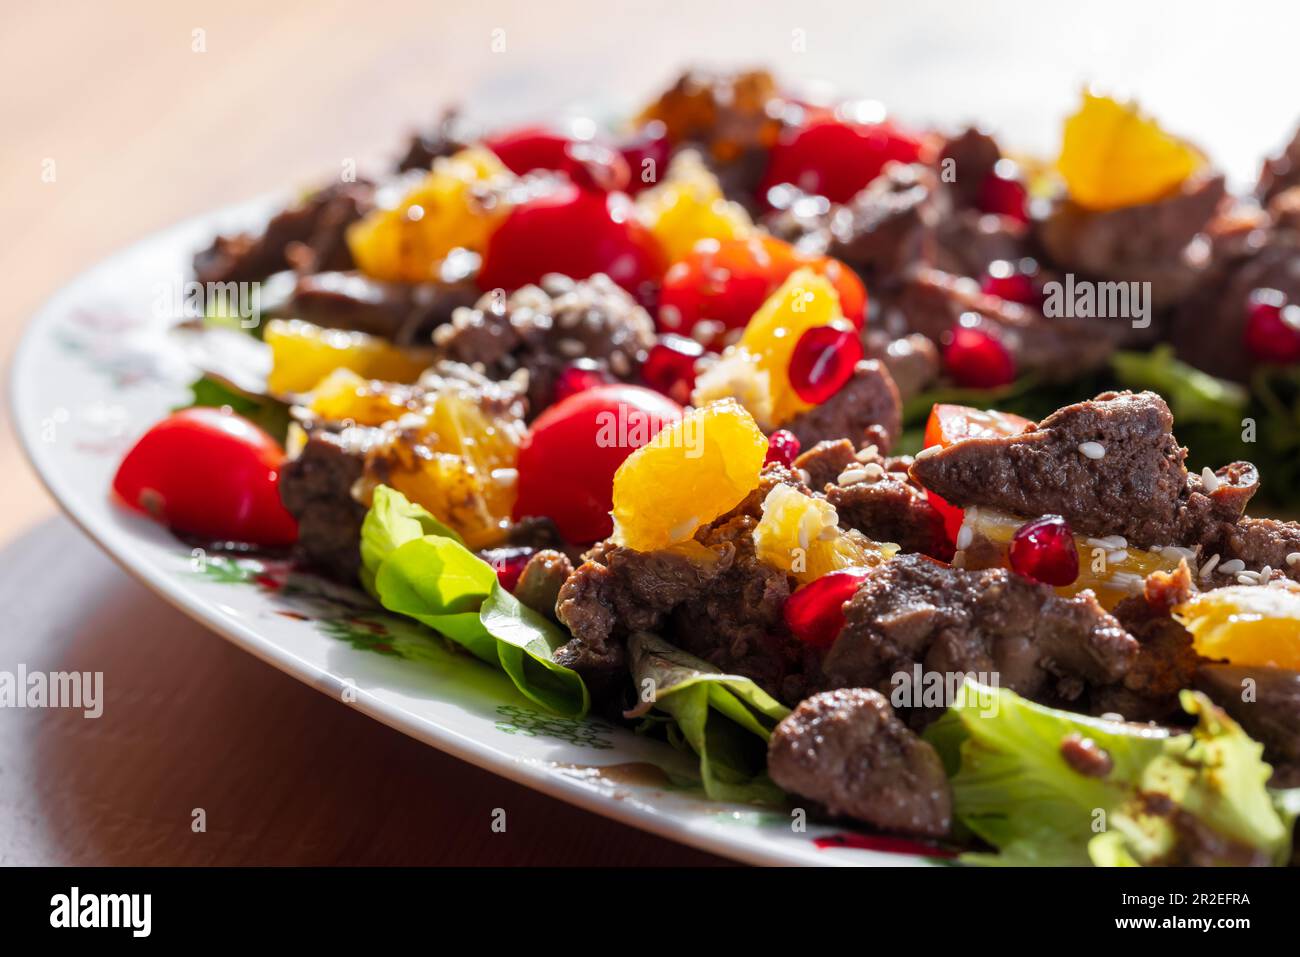 Foto de cerca de ensalada caliente con hígado de pollo, tomates cherry, naranja, lechuga, semillas de granada y sésamo Foto de stock